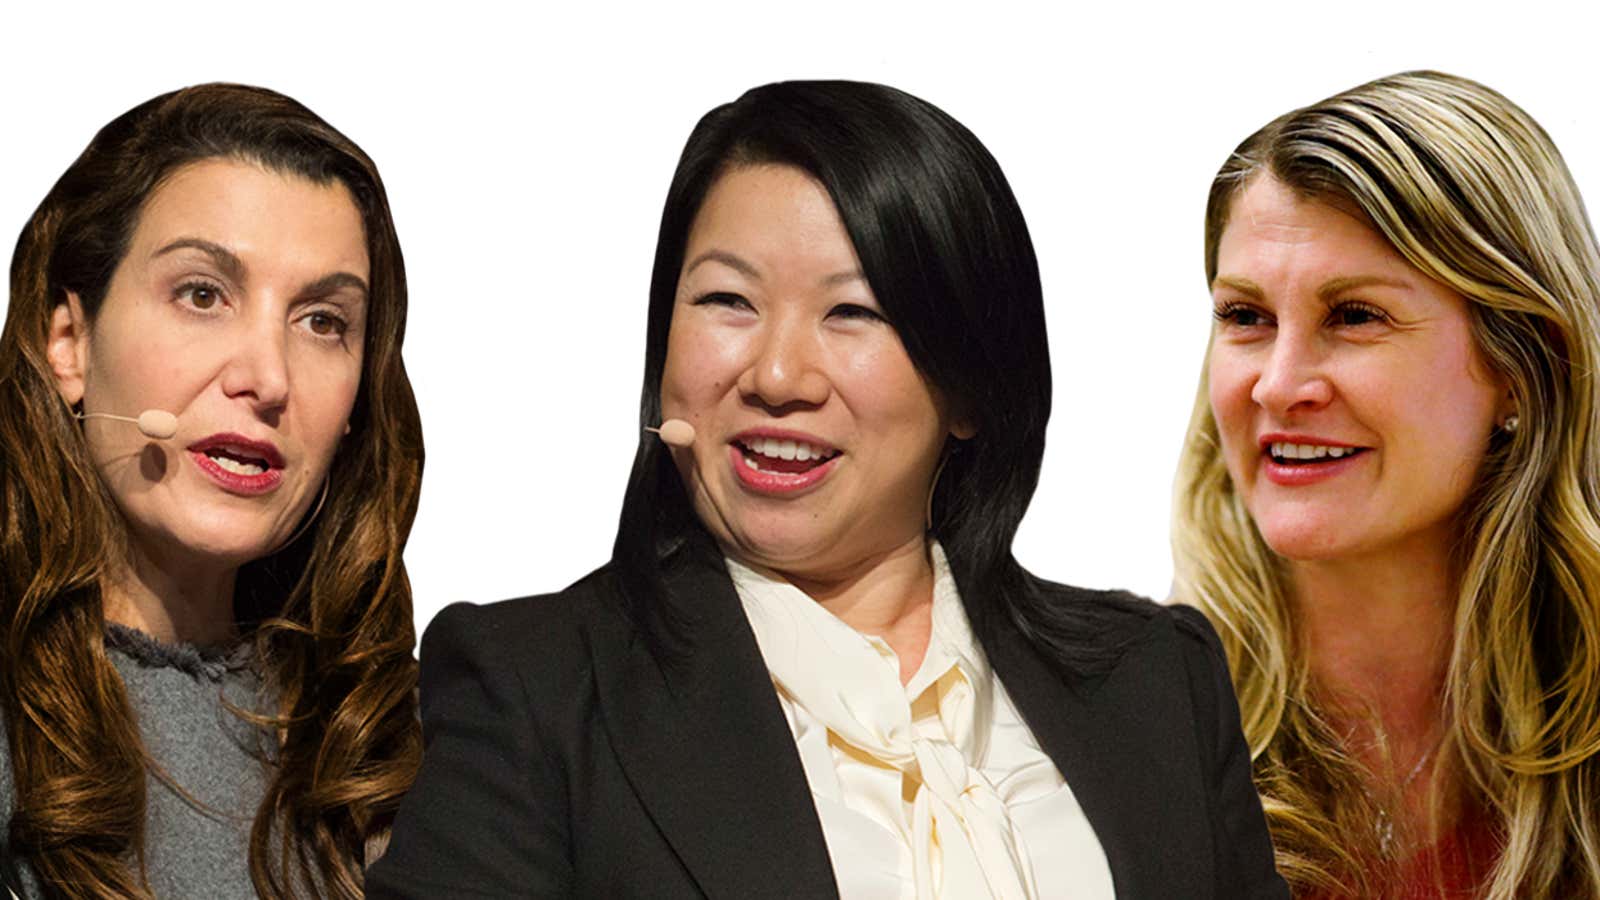 (From left) Brandless co-founder Tina Sharkey, Zola co-founder Shan-Lyn Ma and Claroty co-founder Galina Antova